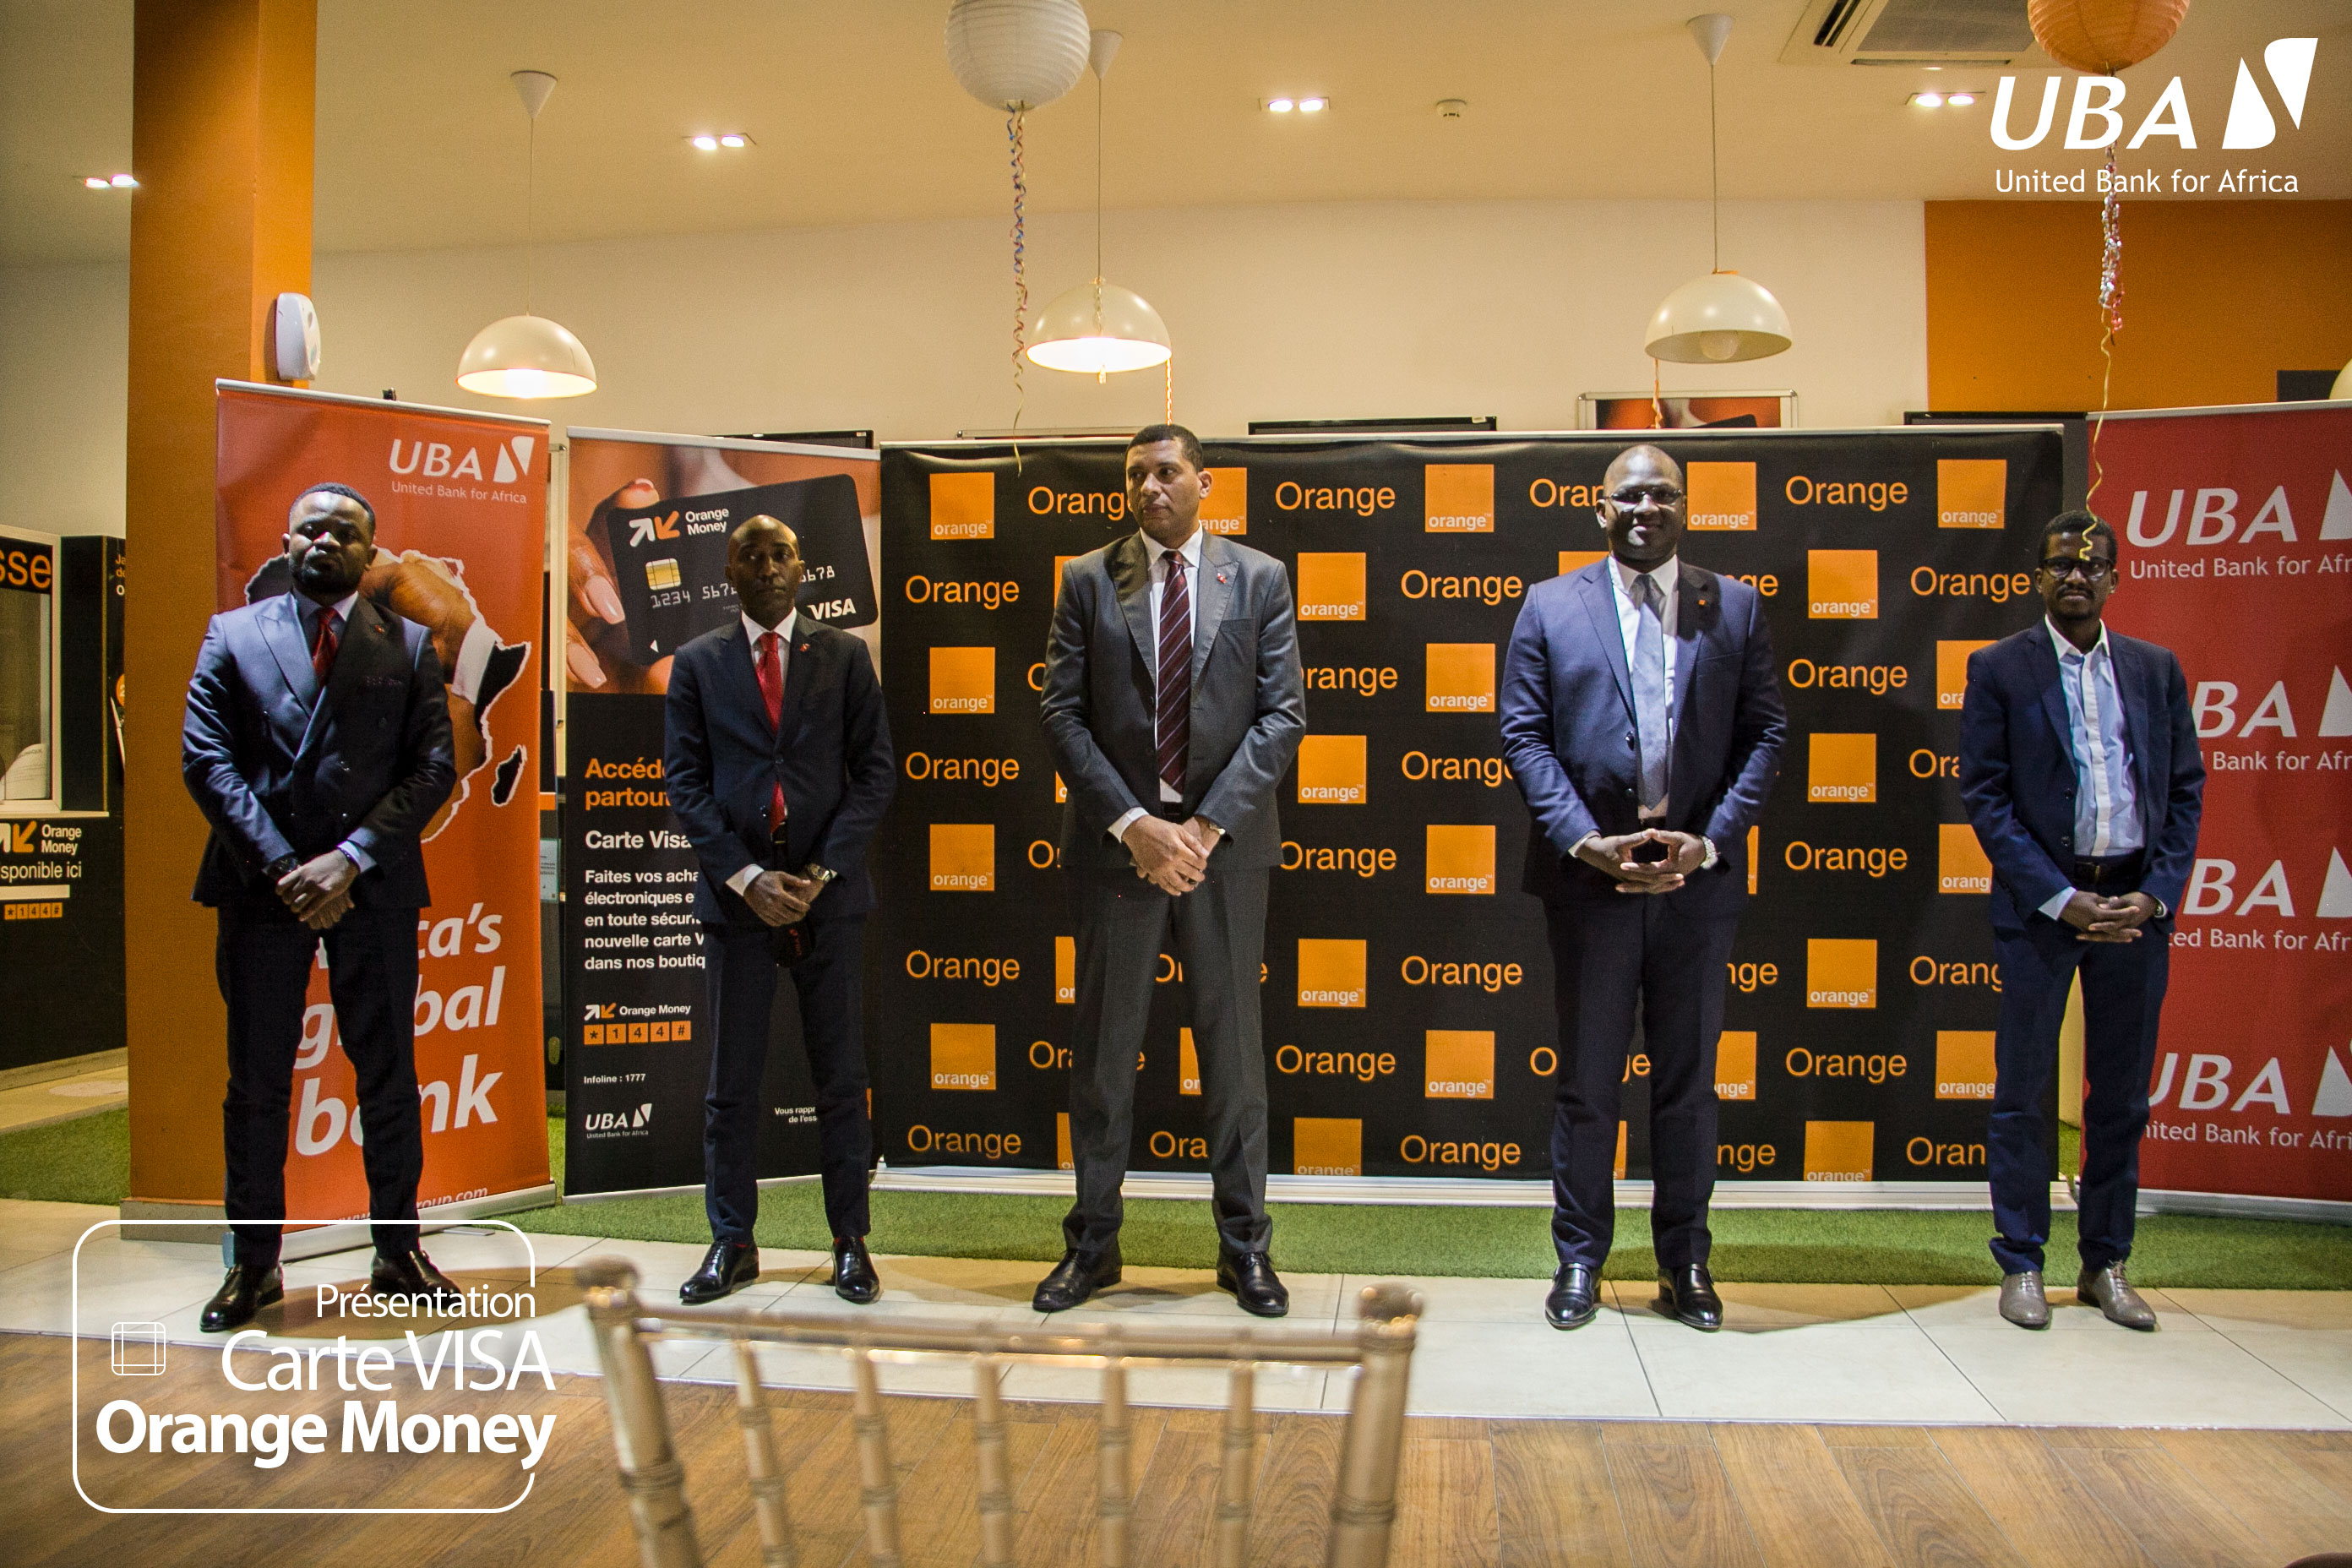 La carte visa Orange Money délivrée par UBA, met à jour la qualité de la relation et le degré de collaboration de nos deux institutions en réalisant une première en RDC : connecter le mobile money au système bancaire par un moyen de paiement électronique de stature mondiale.